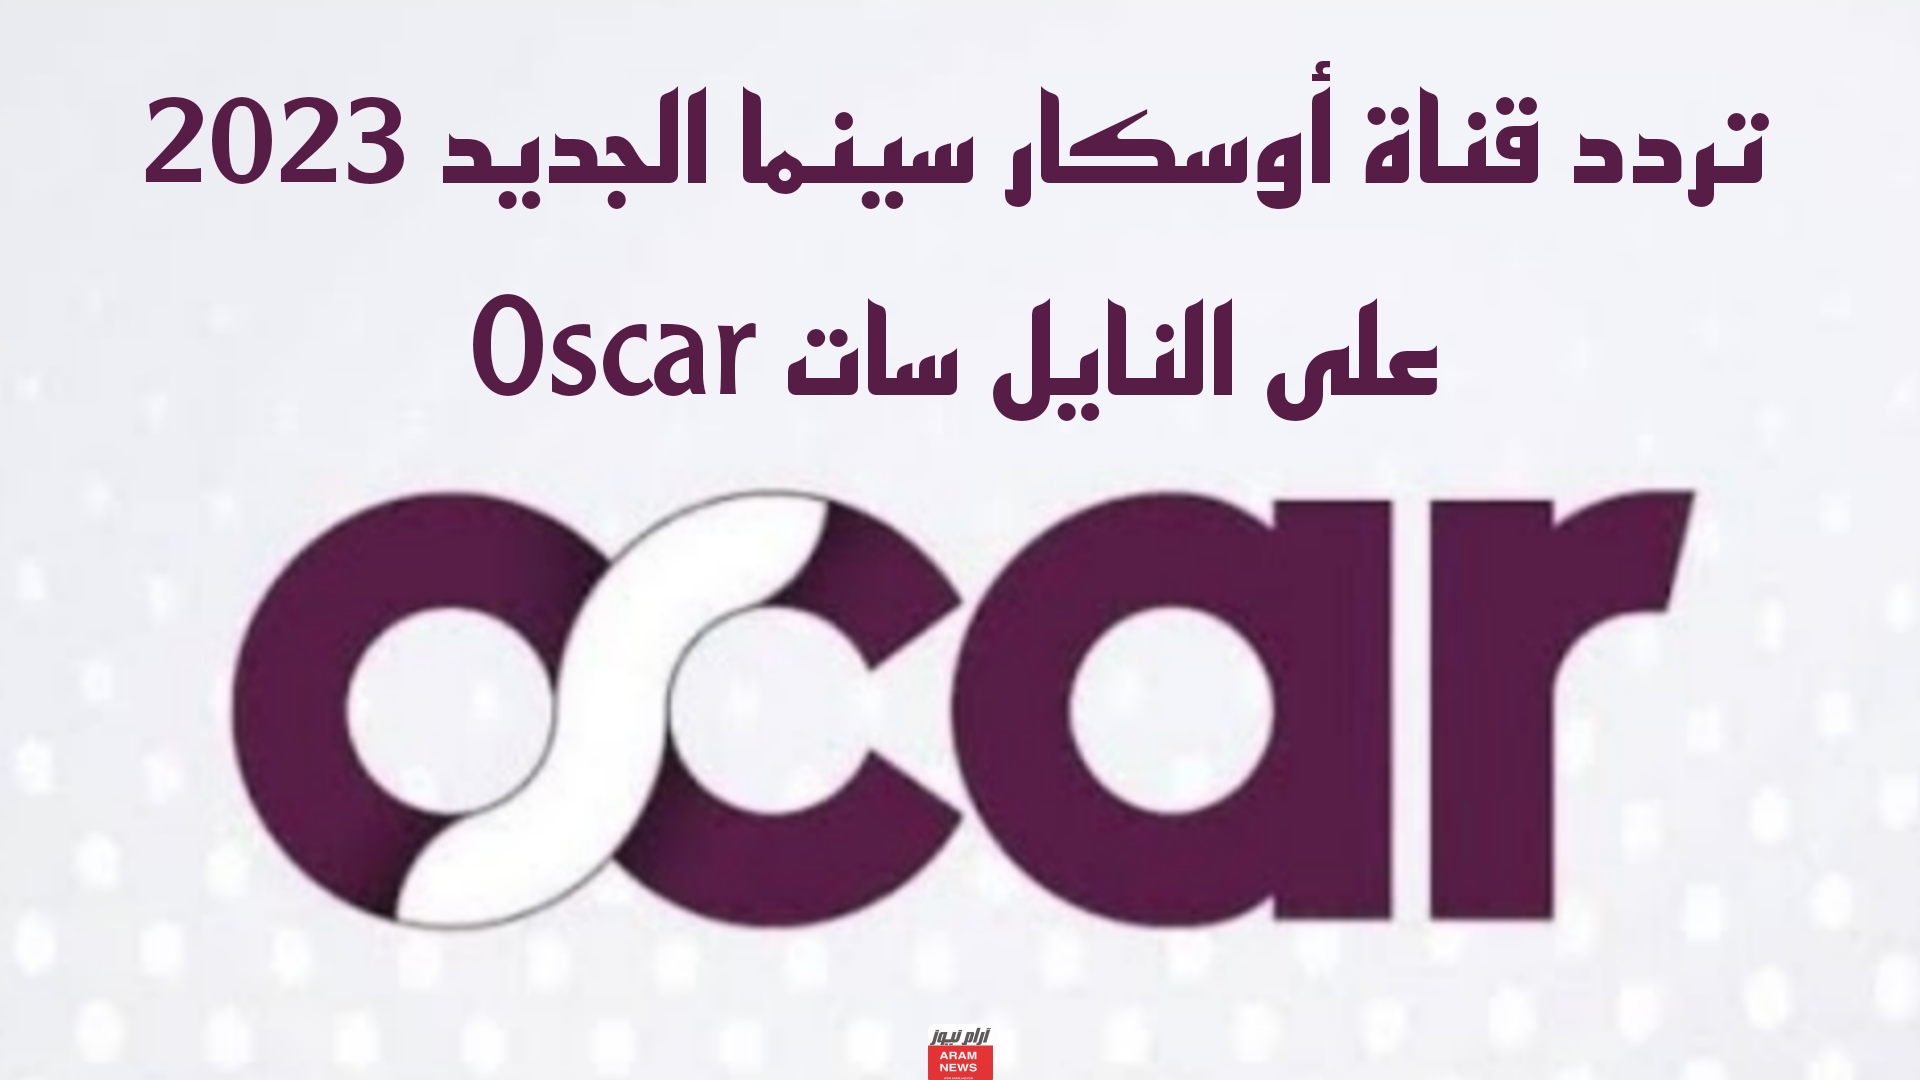 تردد قناة أوسكار سينما الجديد 2023 على النايل سات Oscar 